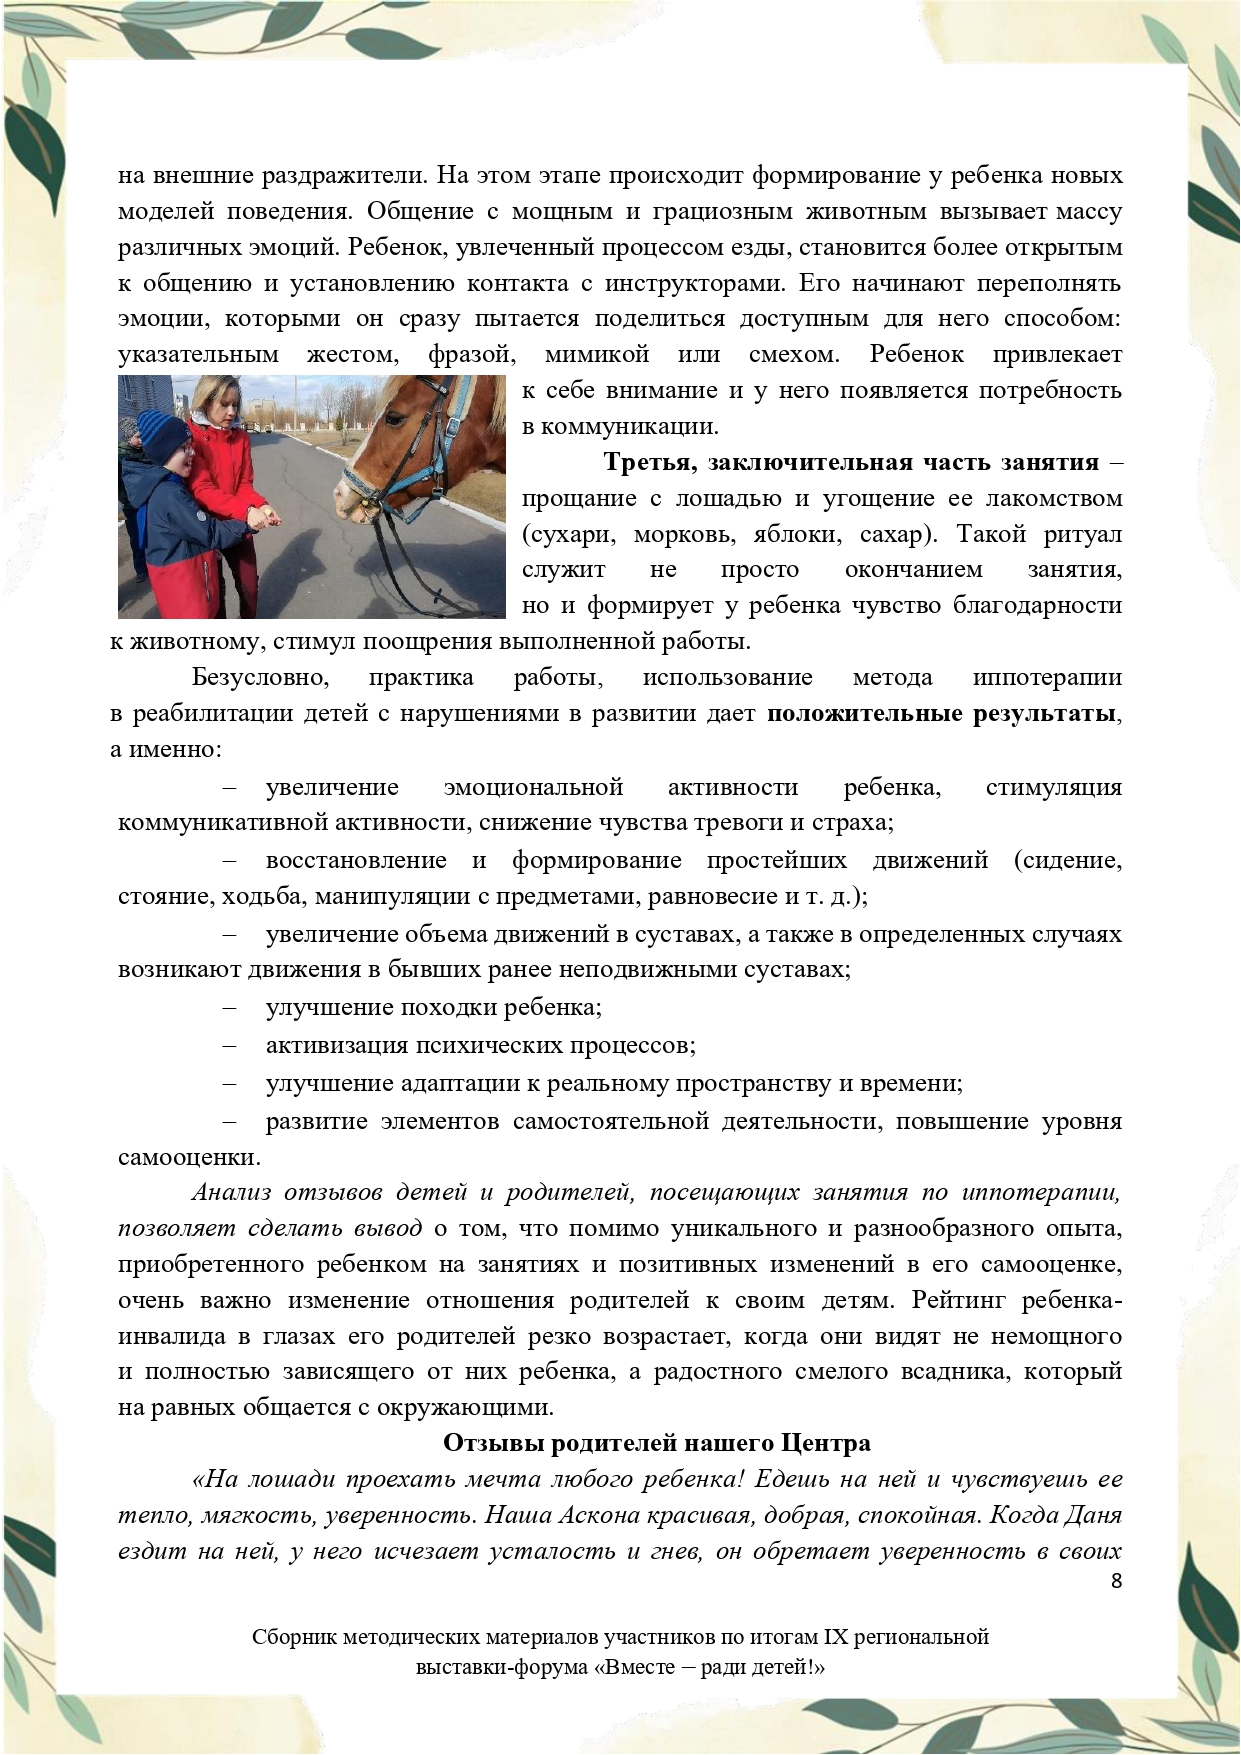 Sbornik_metodicheskikh_materialov_uchastnikov_IX_regionalnoy_vystavki-foruma_Vmeste__radi_detey_33__2023_page-0008